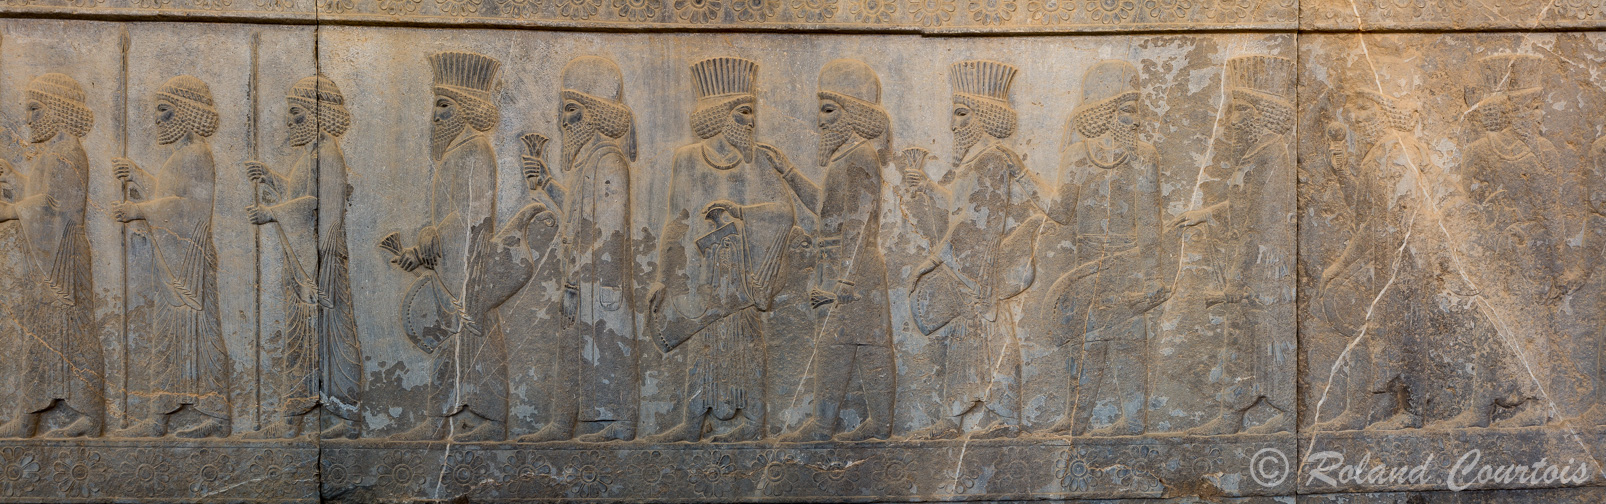 Persepolis: Frise des immortels. Discussion dans les rangs !